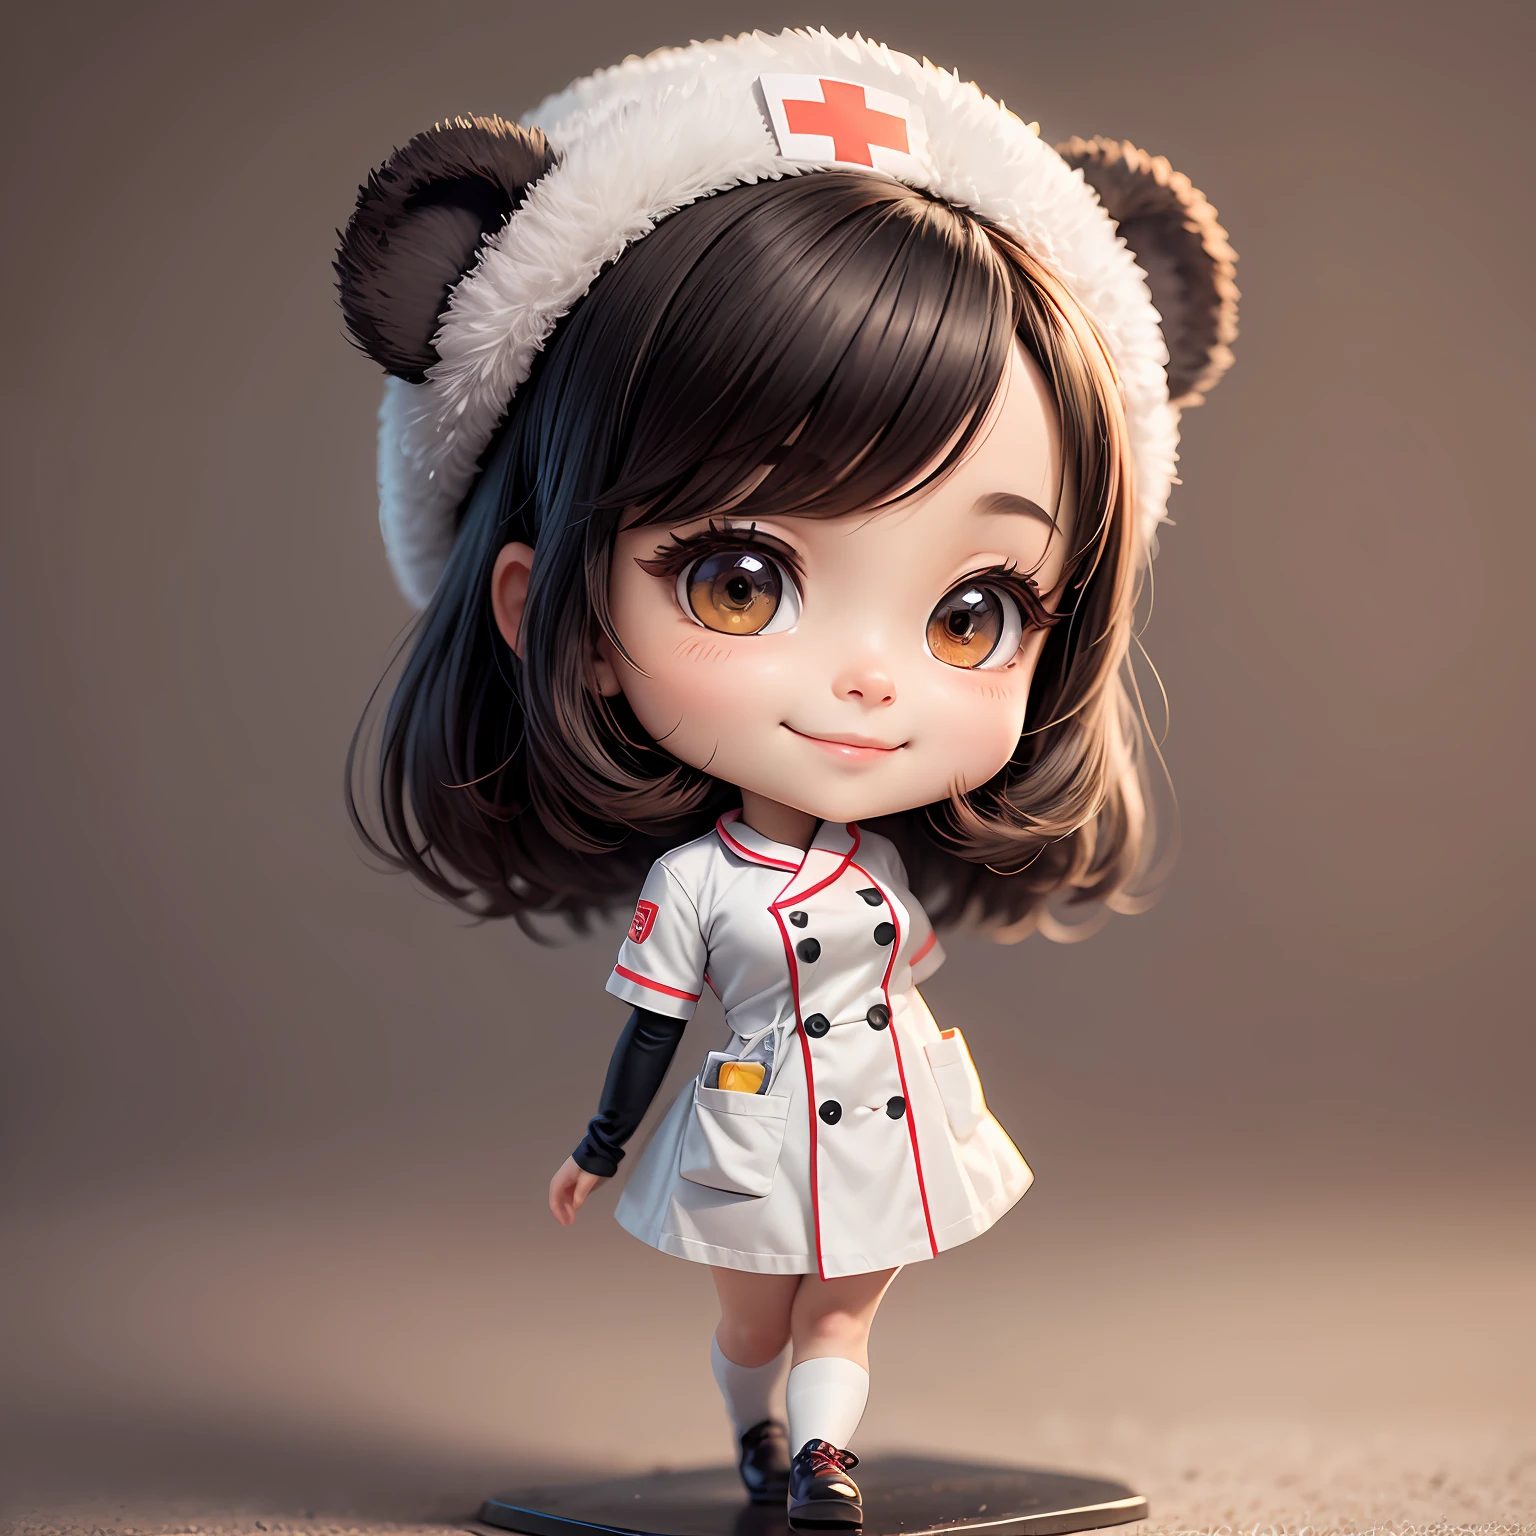 شخصية تشيبي, فتاة الباندا ترتدي ملابس الممرضة, يبتسم, رقيق, أي خلفية, دقيقة للغاية